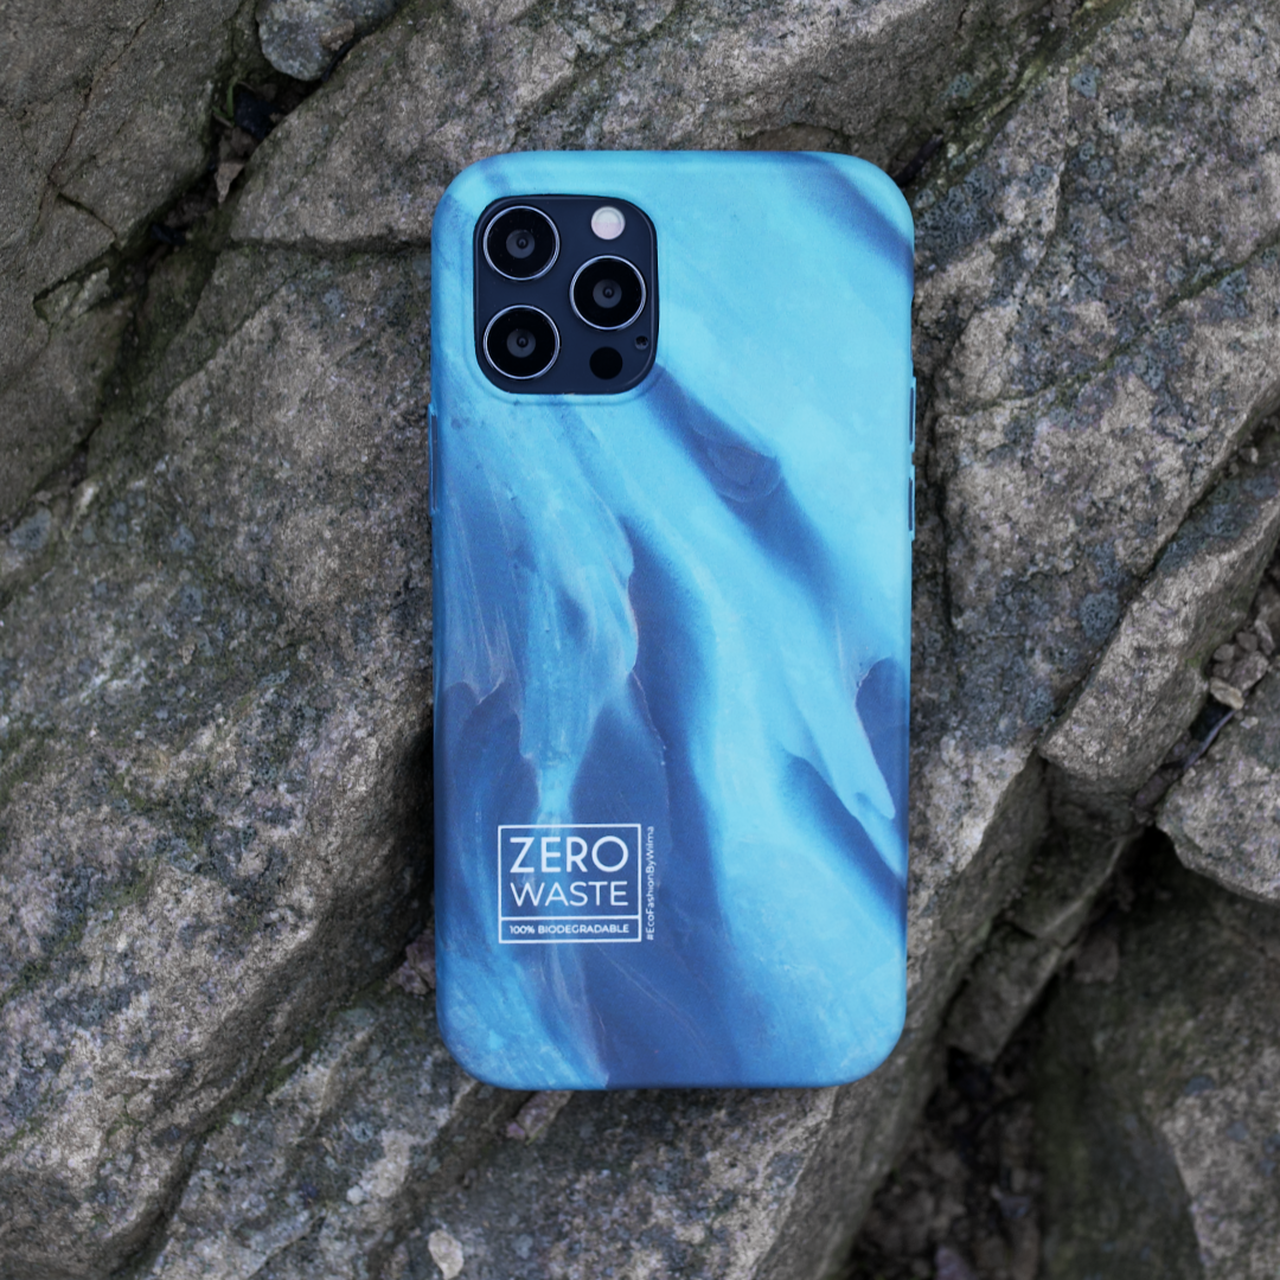 Wilma Design Biodegradable Case iPhone 12 Pro Max - Glacier